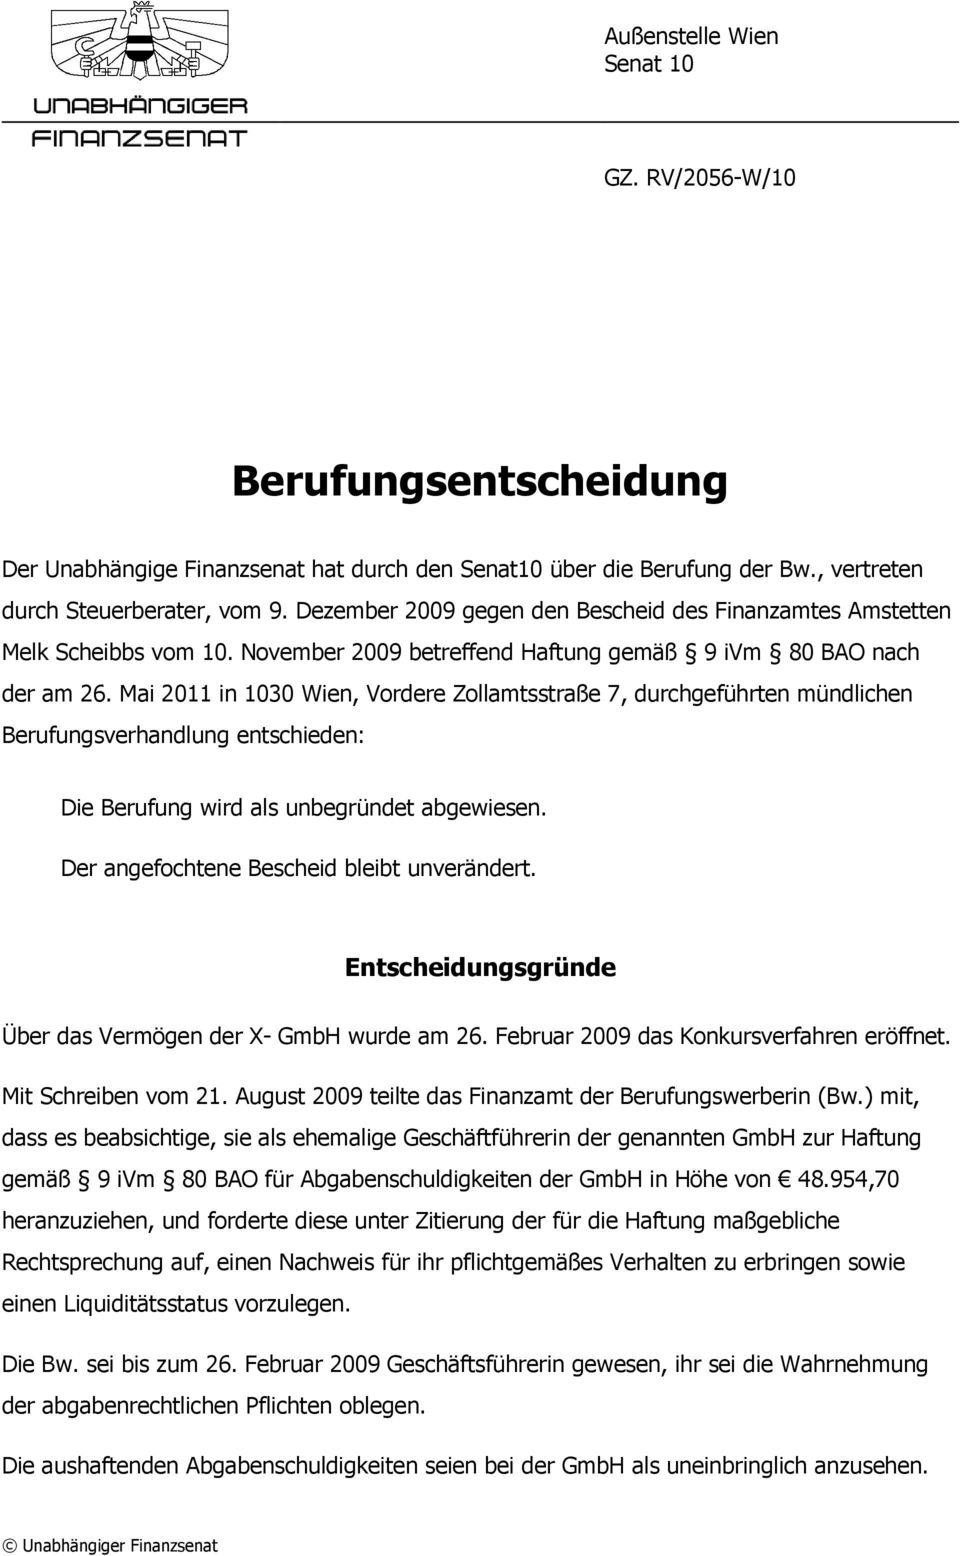 Mai 2011 in 1030 Wien, Vordere Zollamtsstraße 7, durchgeführten mündlichen Berufungsverhandlung entschieden: Die Berufung wird als unbegründet abgewiesen. Der angefochtene Bescheid bleibt unverändert.